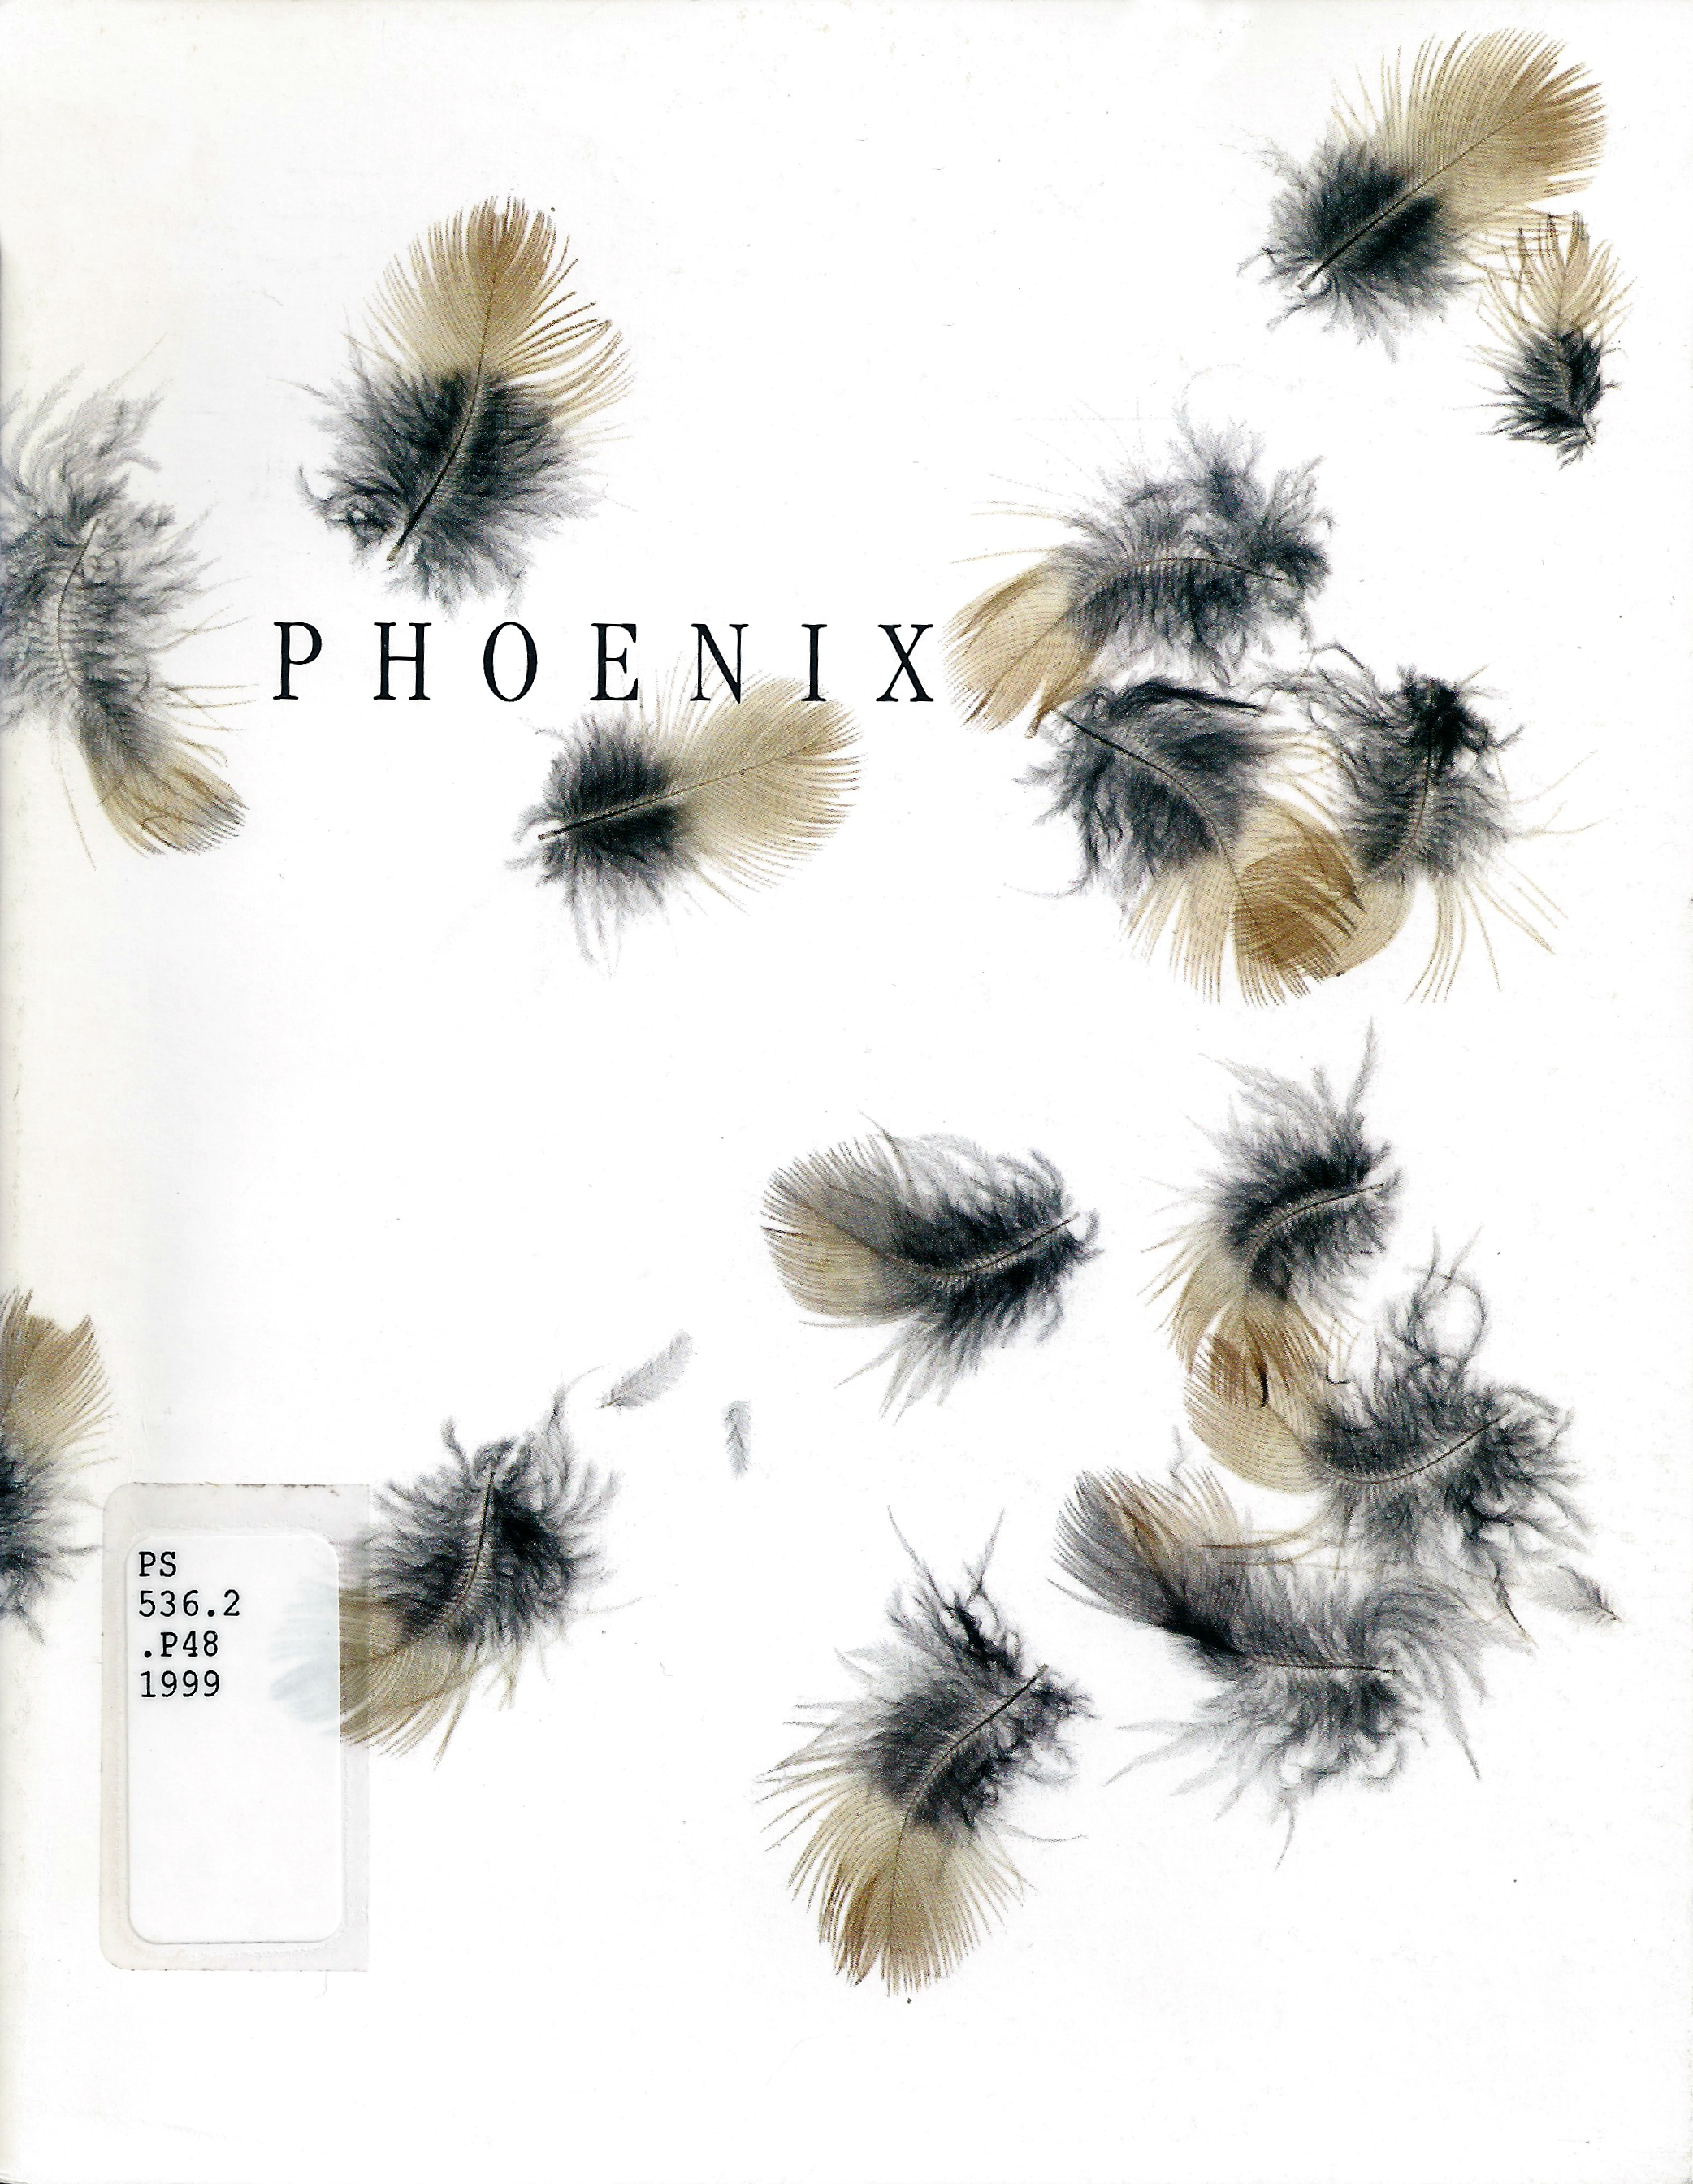 PHOENIX 1999